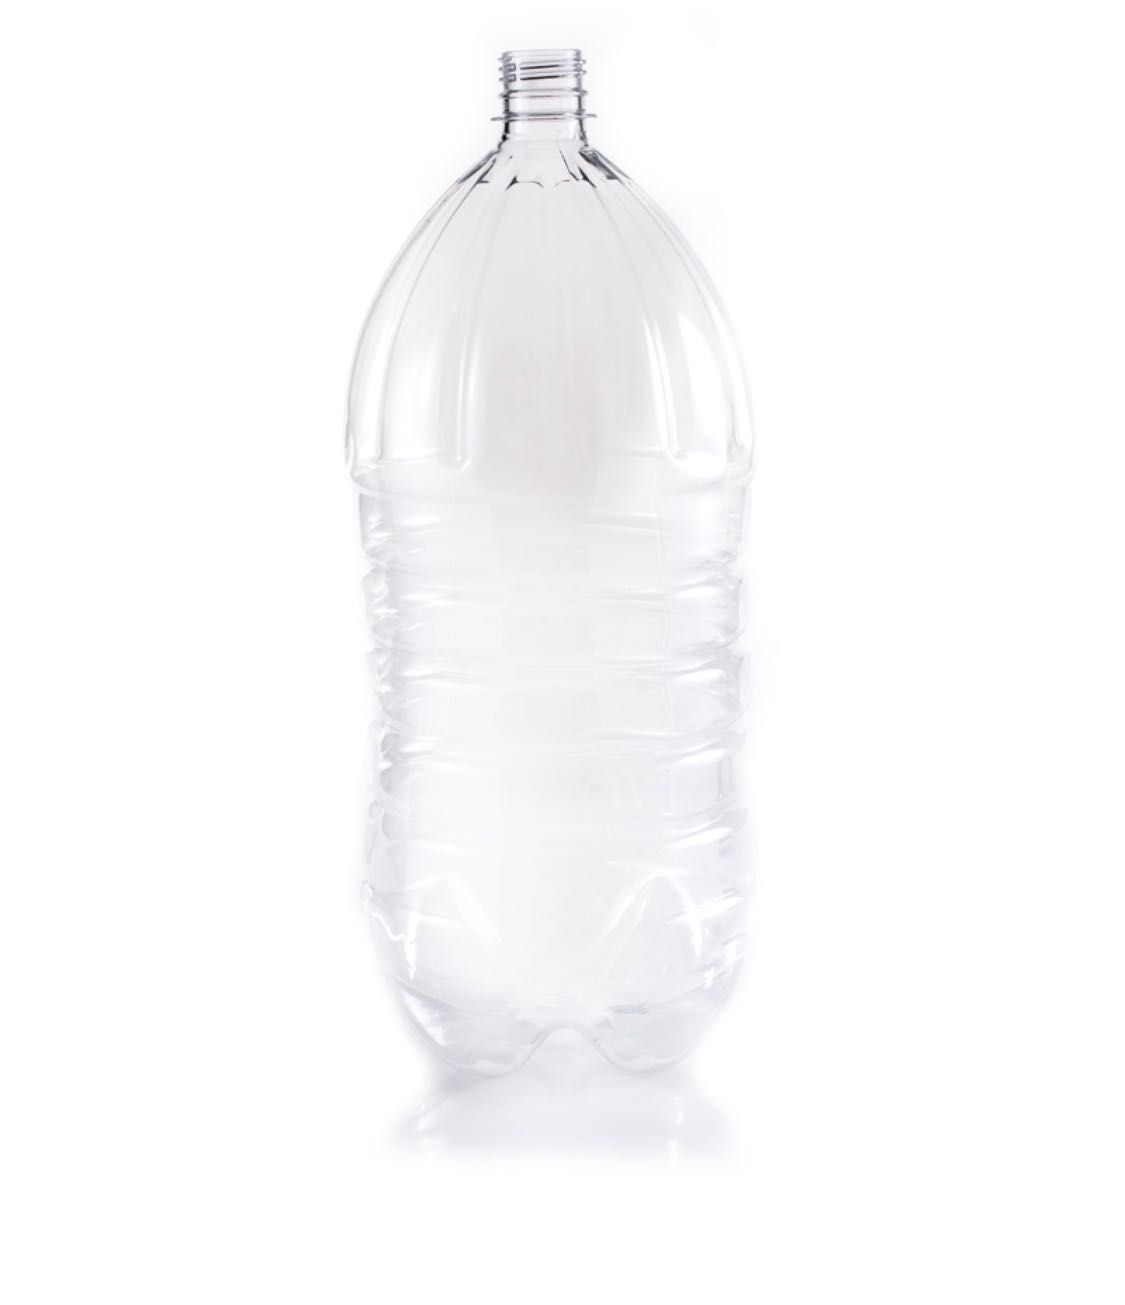 Пэт тара(бутылка) от 50 мл до 10 литров все объёмы.Бутылка с 38 горлом